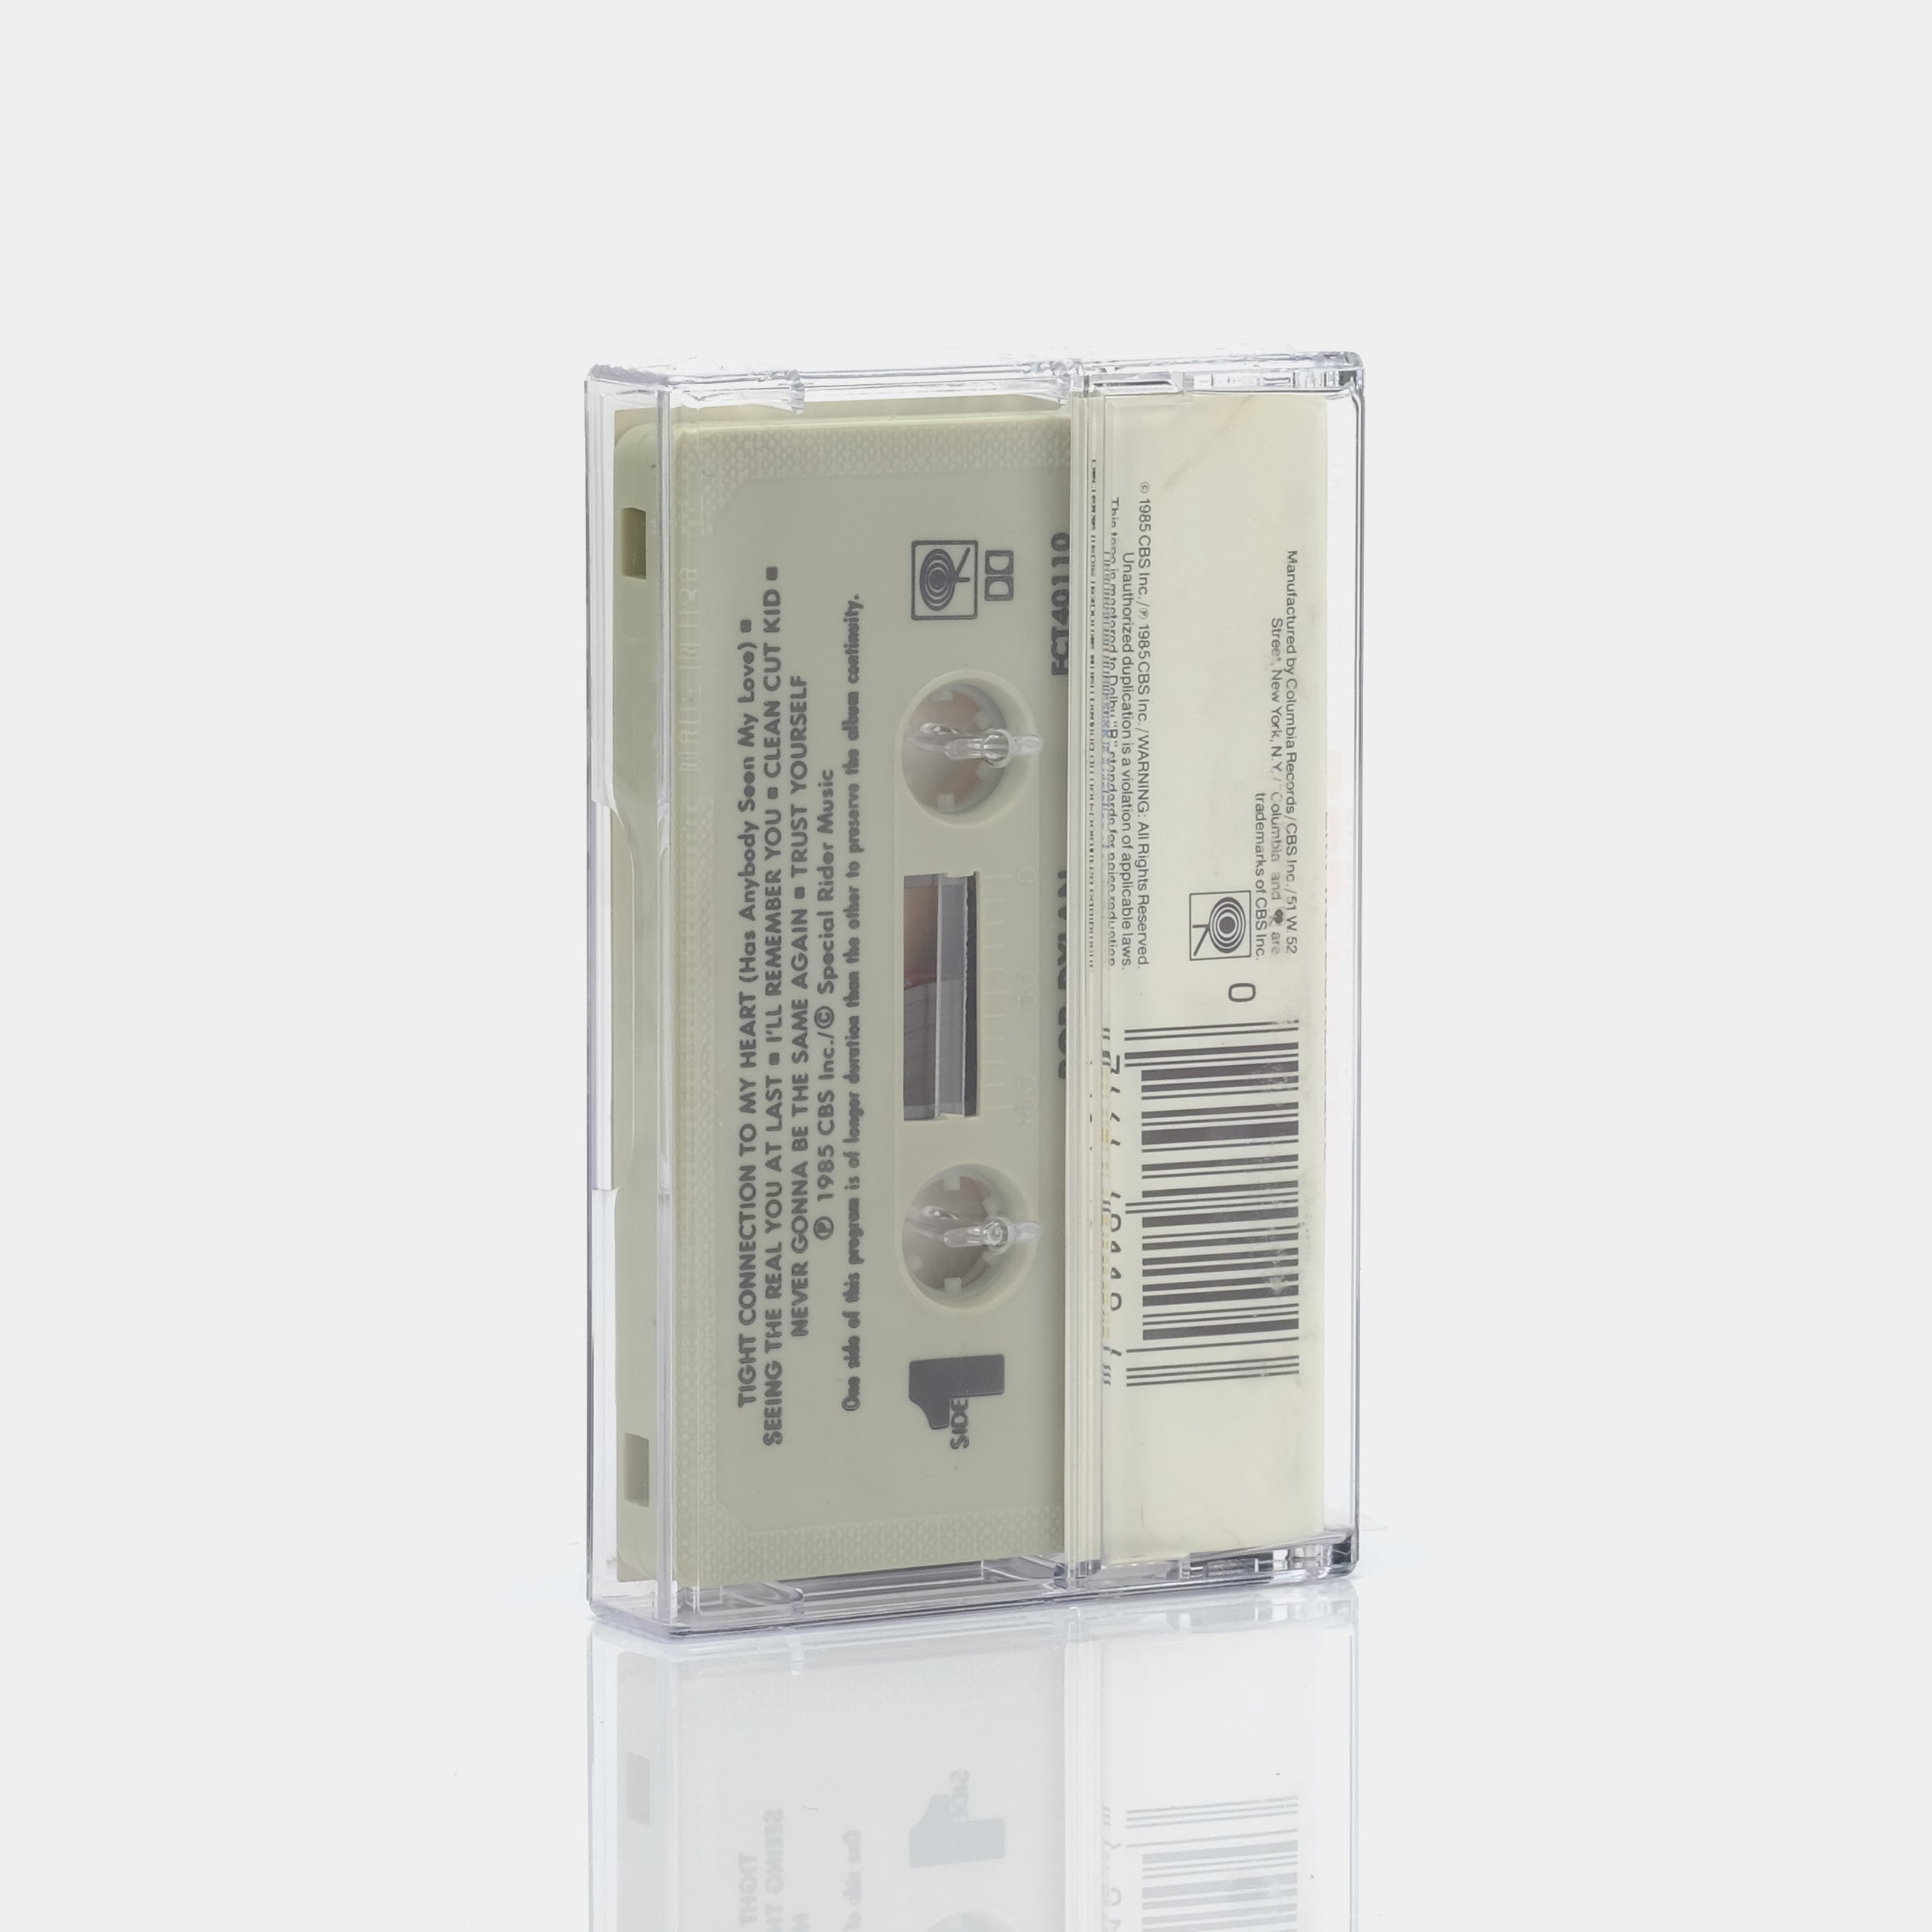 Bob Dylan - Empire Burlesque Cassette Tape